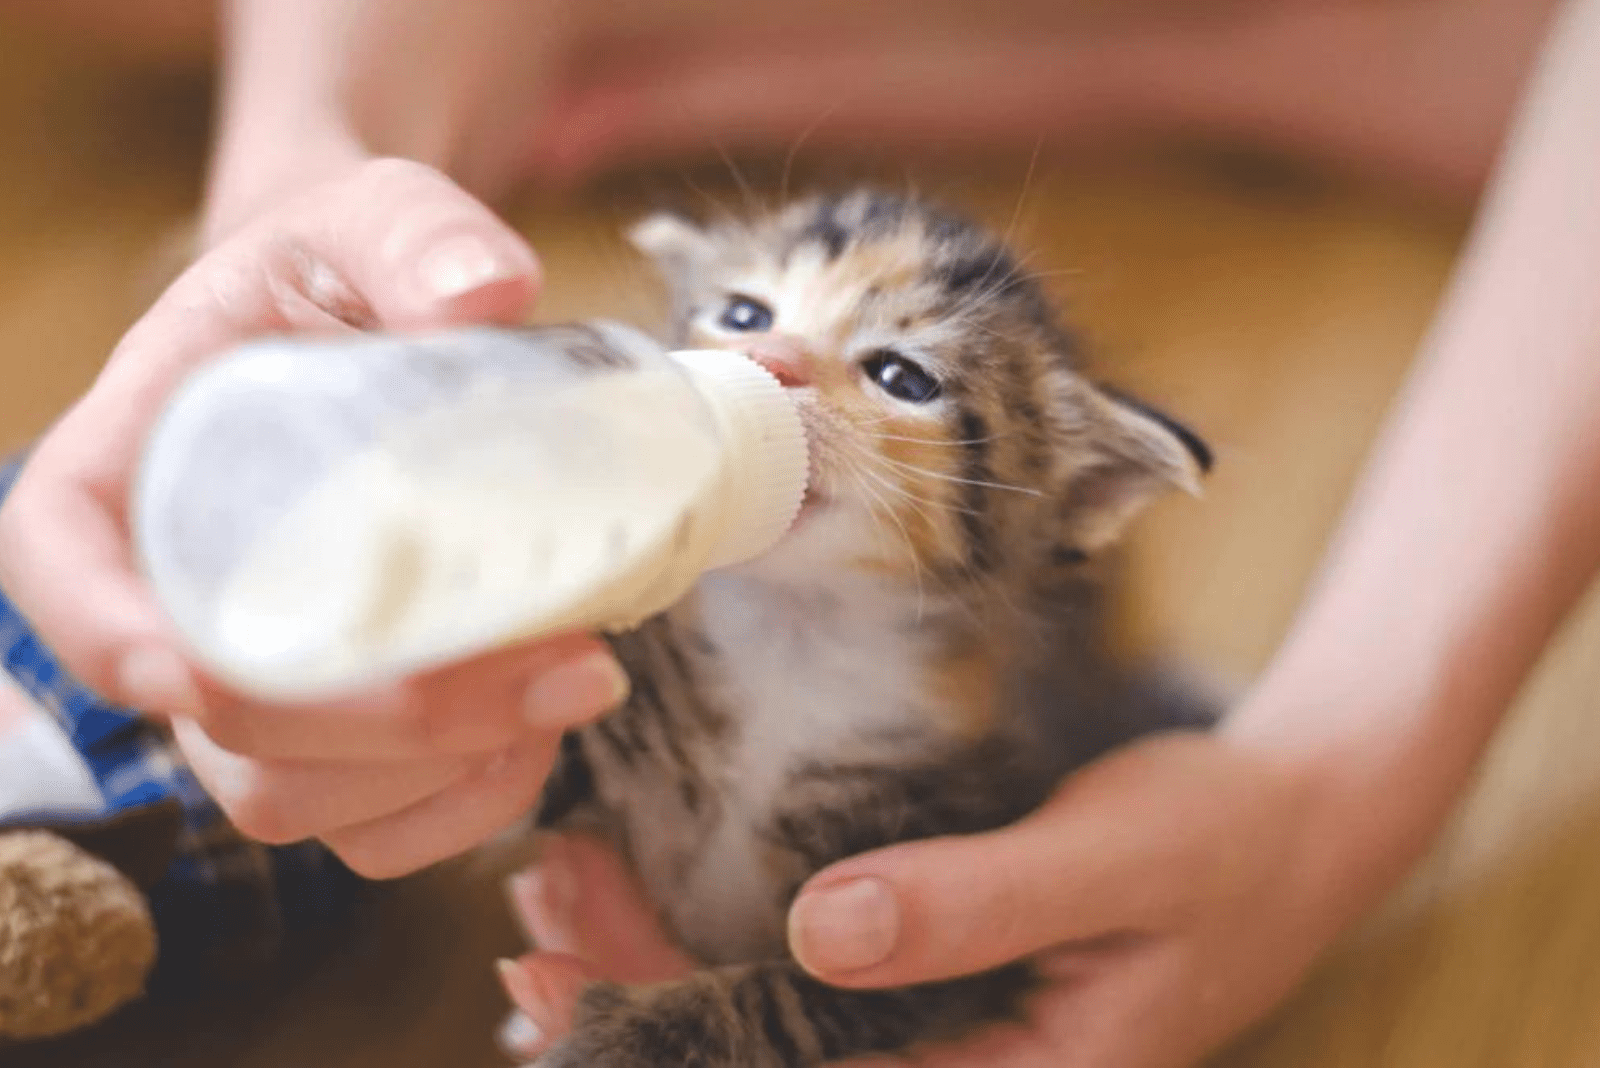 a woman feeds a kitten